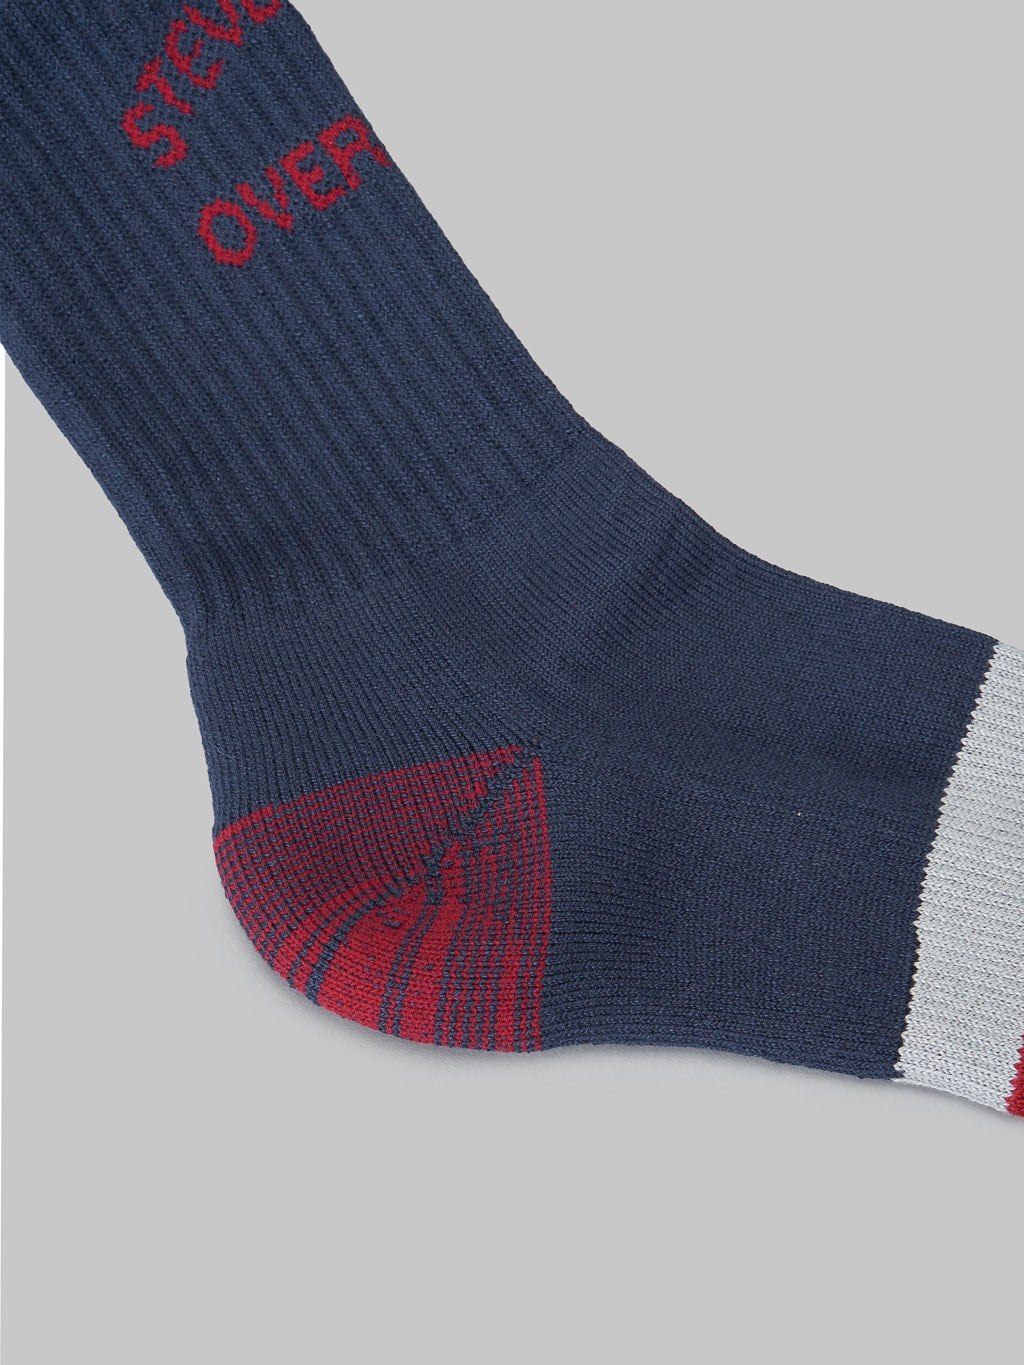 Stevenson Overall Athletic Socks navy heel detail